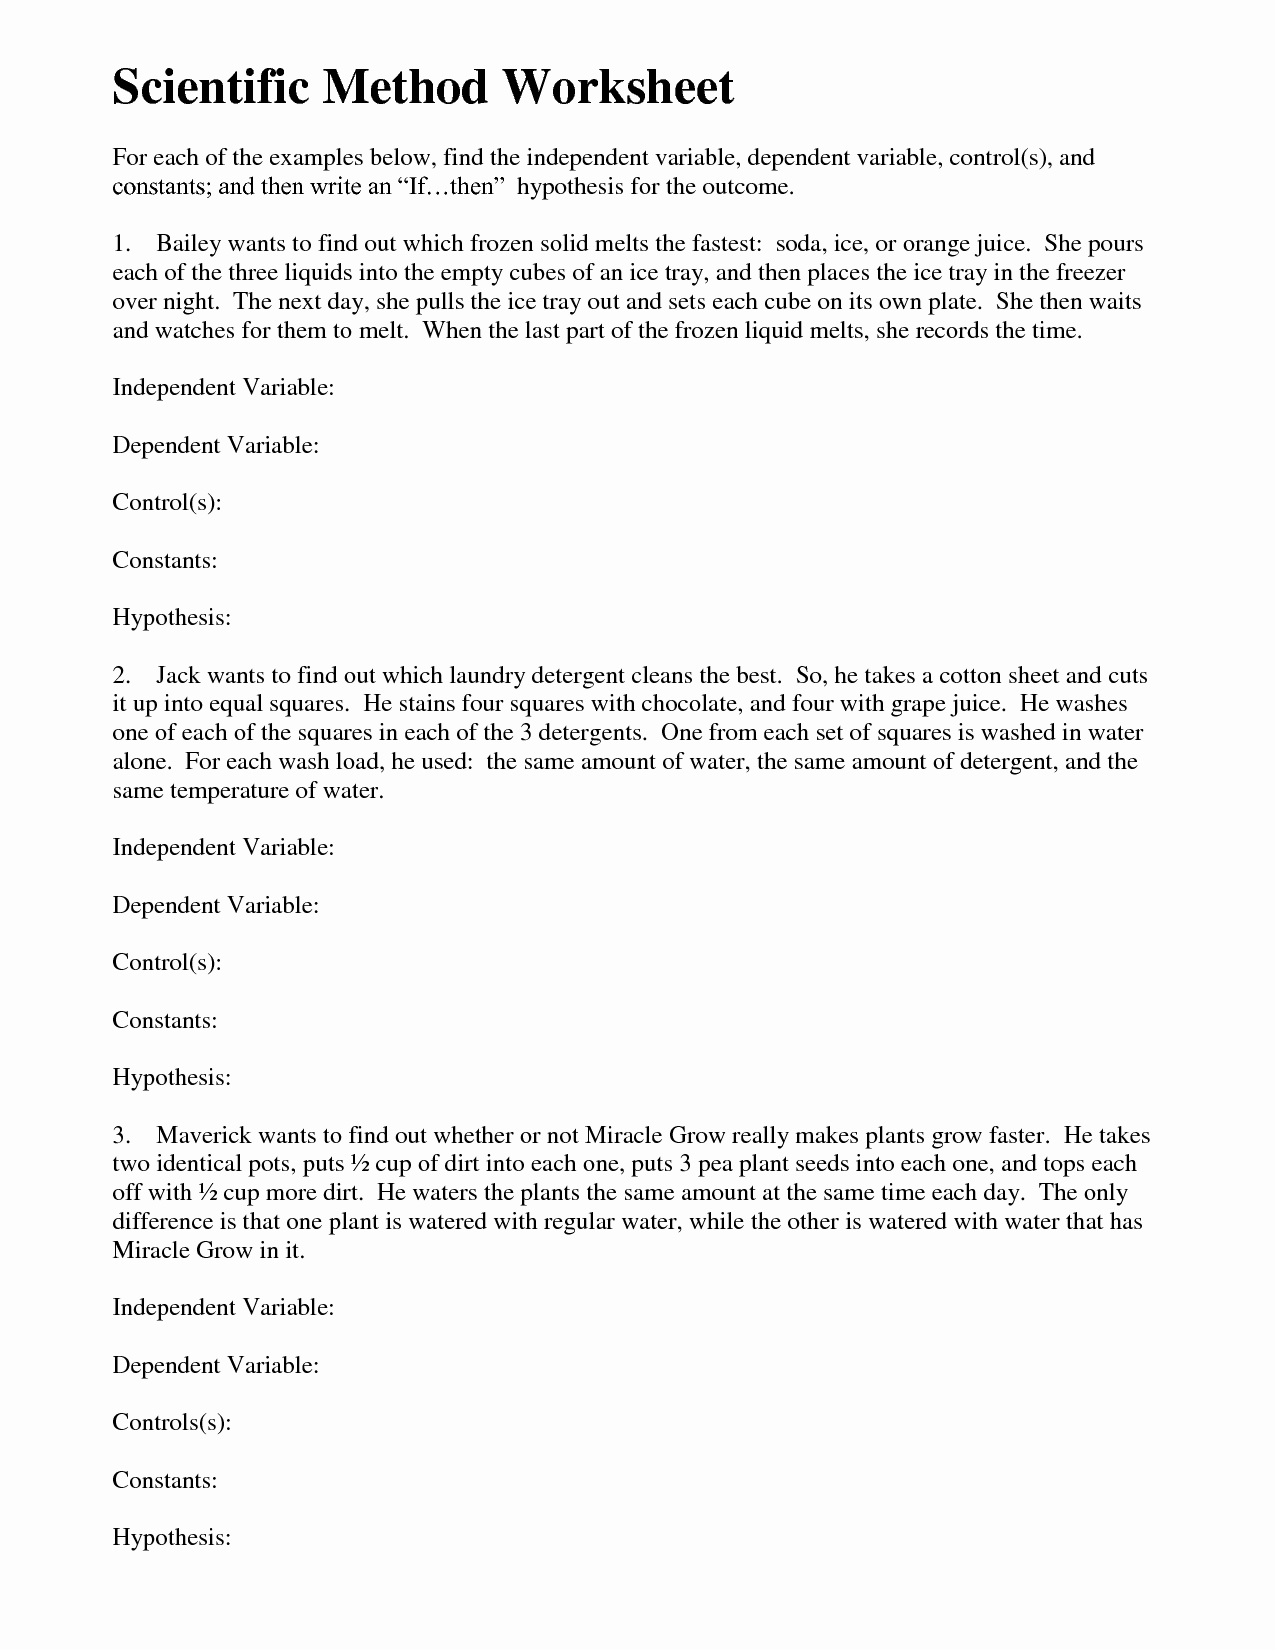 Scientific Method Worksheet Answer Key Elegant 15 Best Of Simpsons Variable Worksheet Answer Key